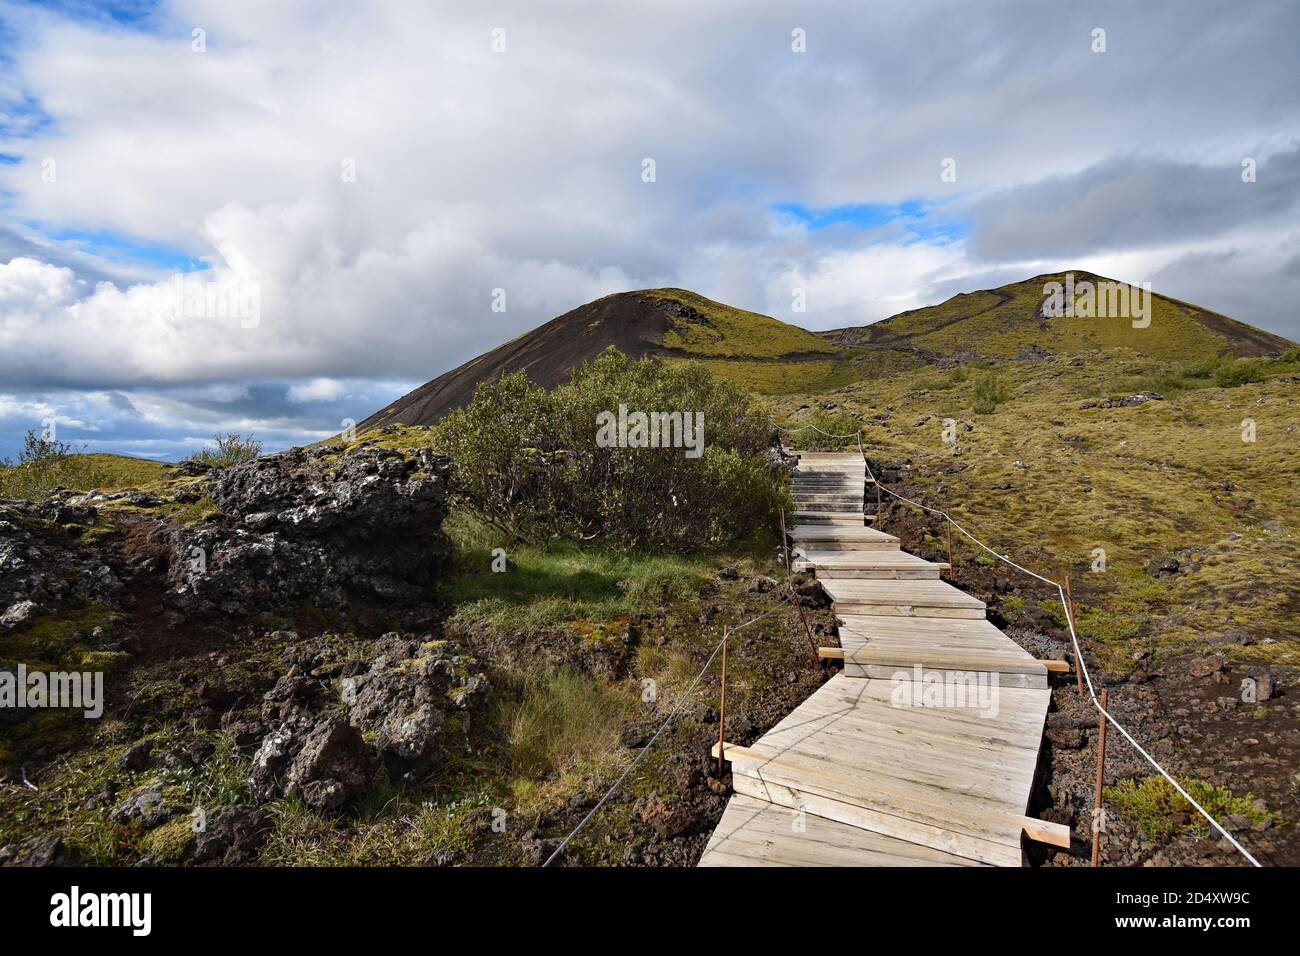 Una passerella in legno passa attraverso la roccia lavica e conduce al bordo del Cratere del Vulcano Grabrok nella Valle di Nordurardalur, nell'Islanda occidentale. Foto Stock